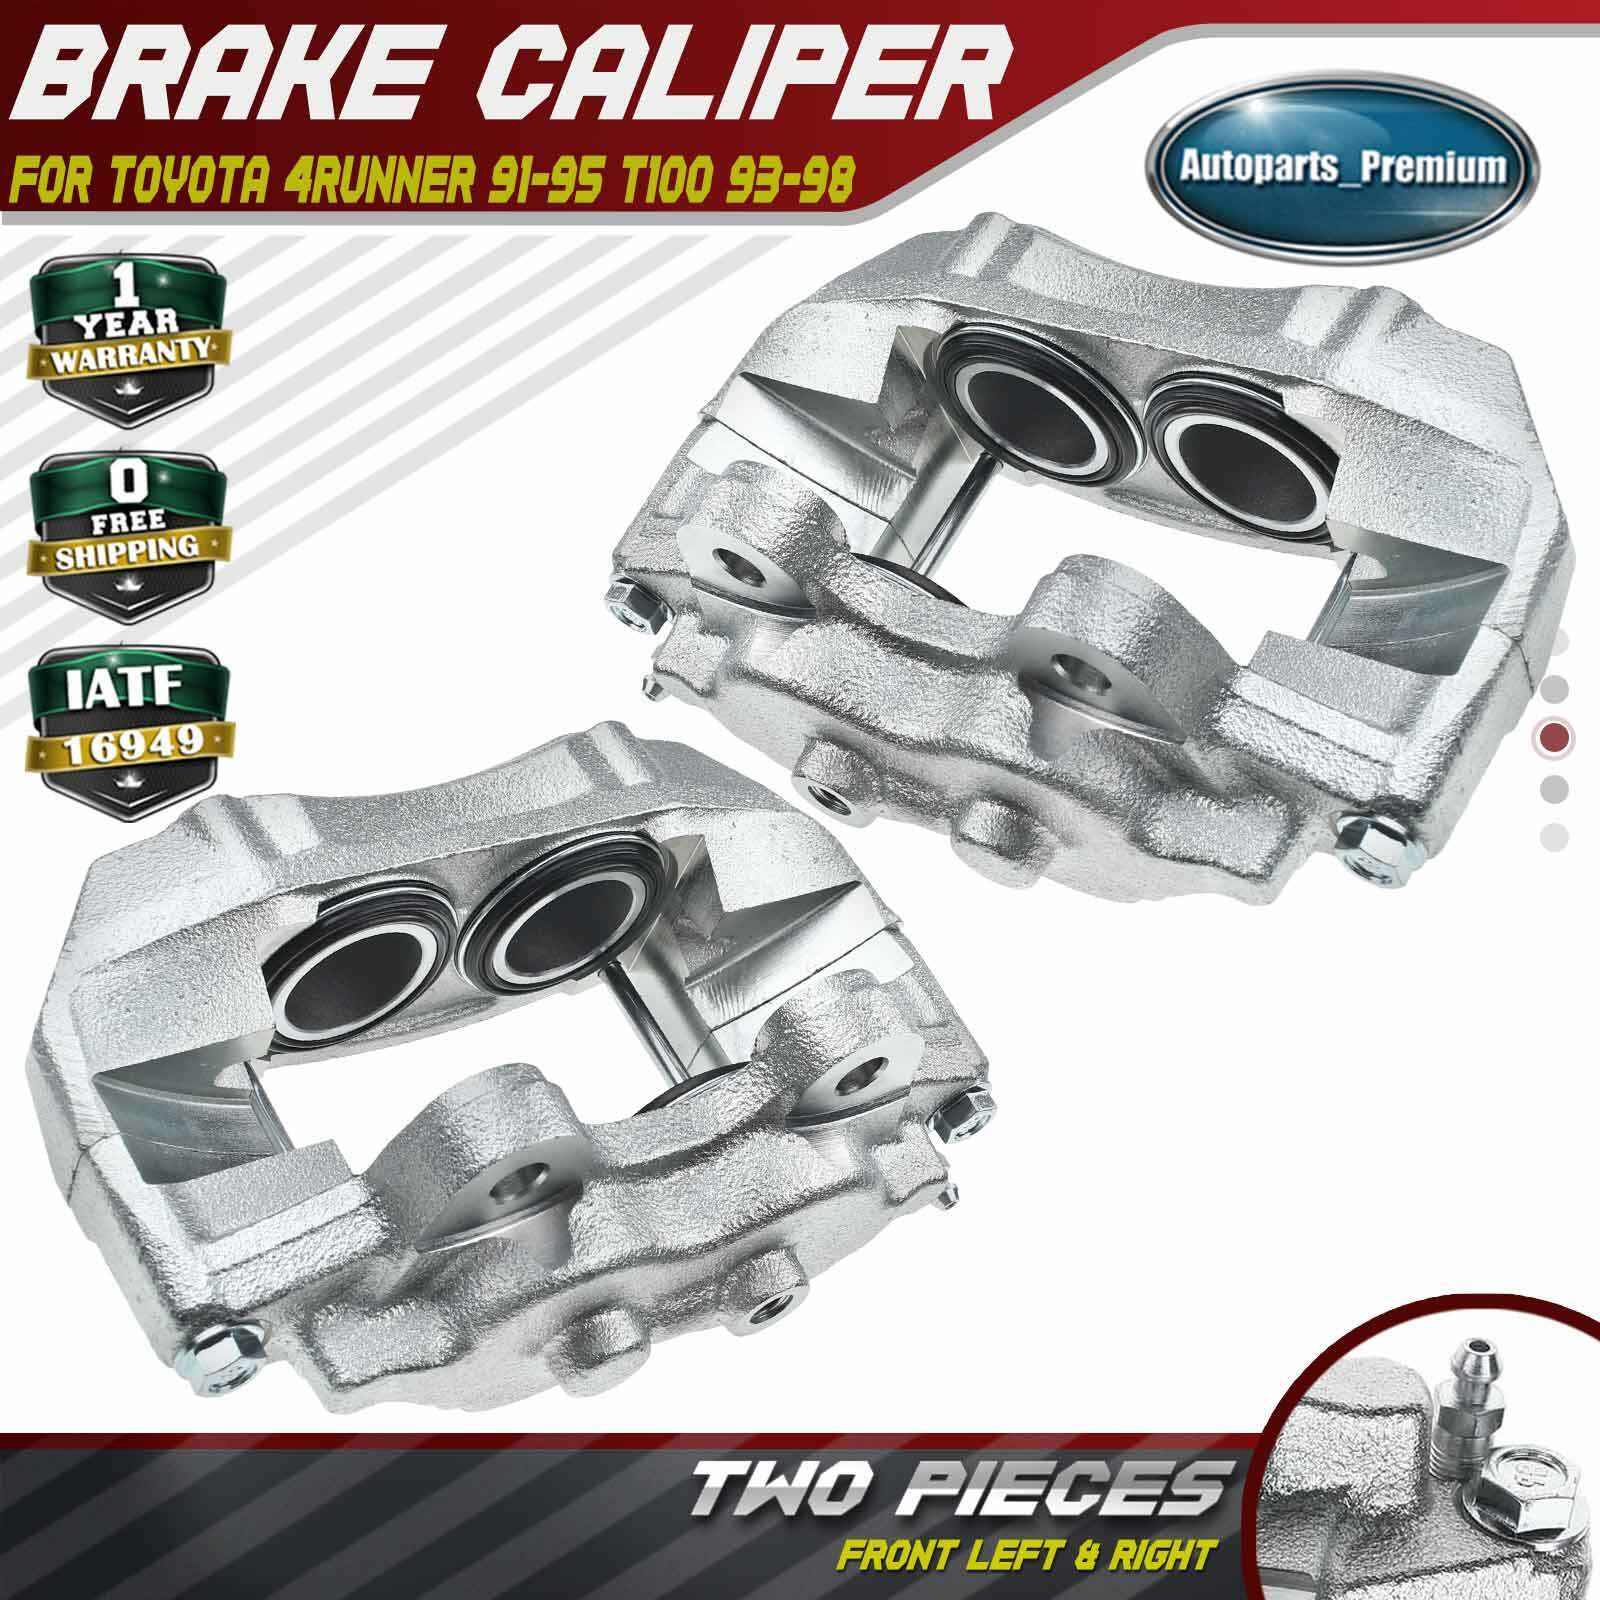 2x Disc Brake Caliper w/4 Pistons for Toyota 4Runner 91-95 T100 93-98 Front Side